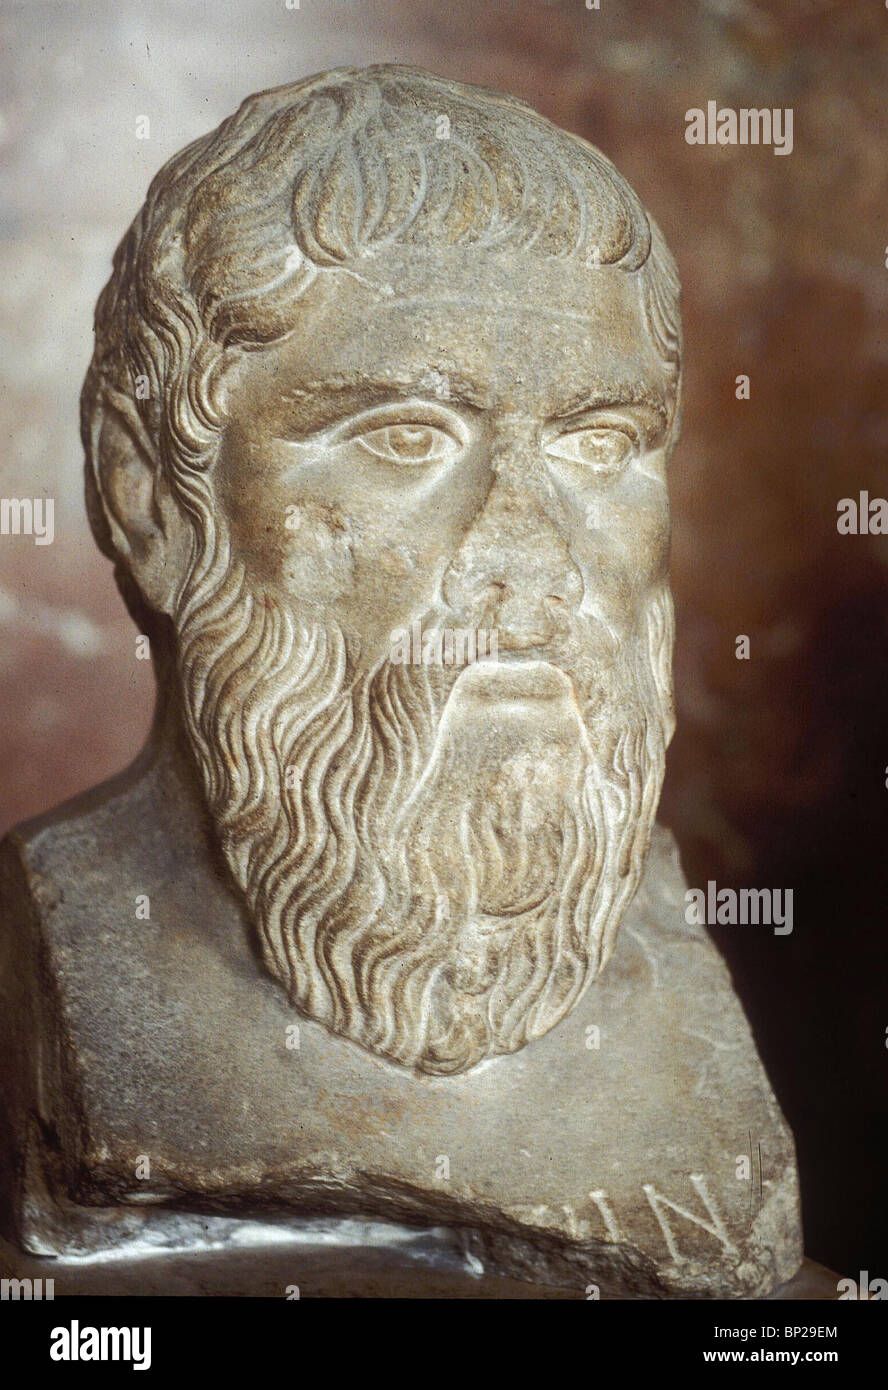 3000. PLATO, ATHENER PHILOSOPH, 428-347 V. CHR. Stockfoto